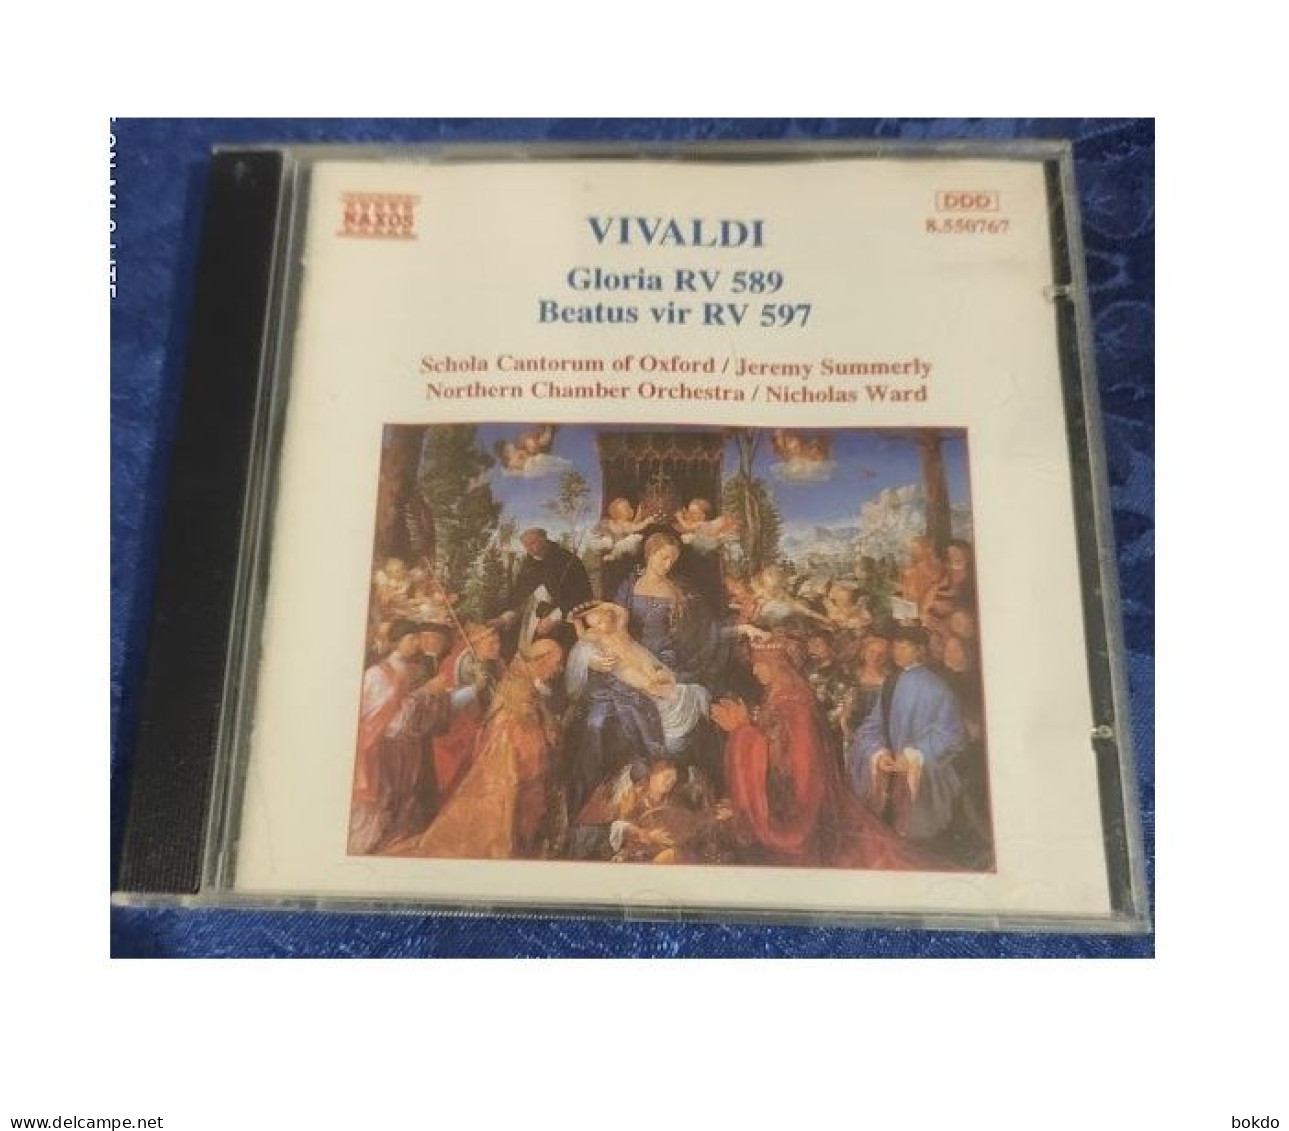 VIVALDI - Gloria RV 589 - Beatus RV 597 - Classique